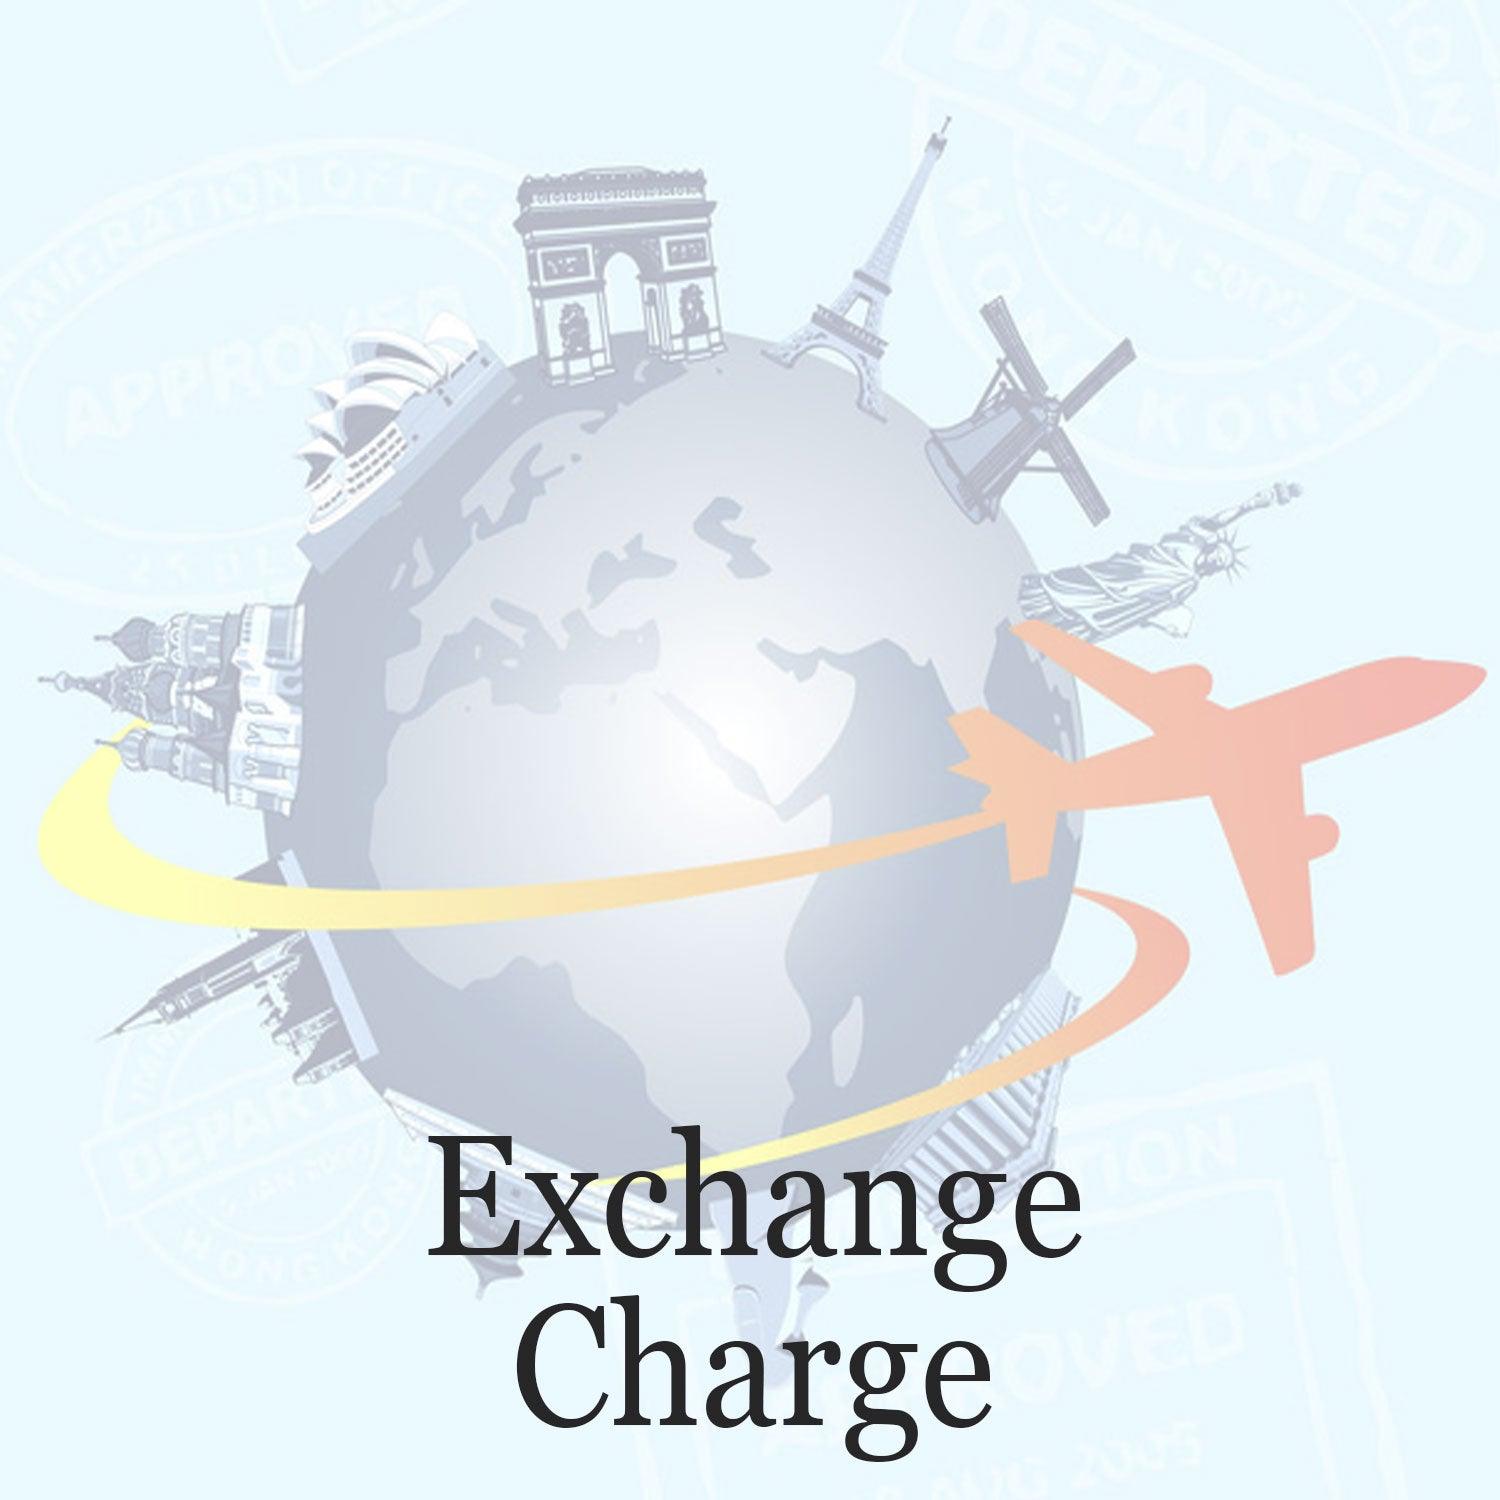 Exchange charge